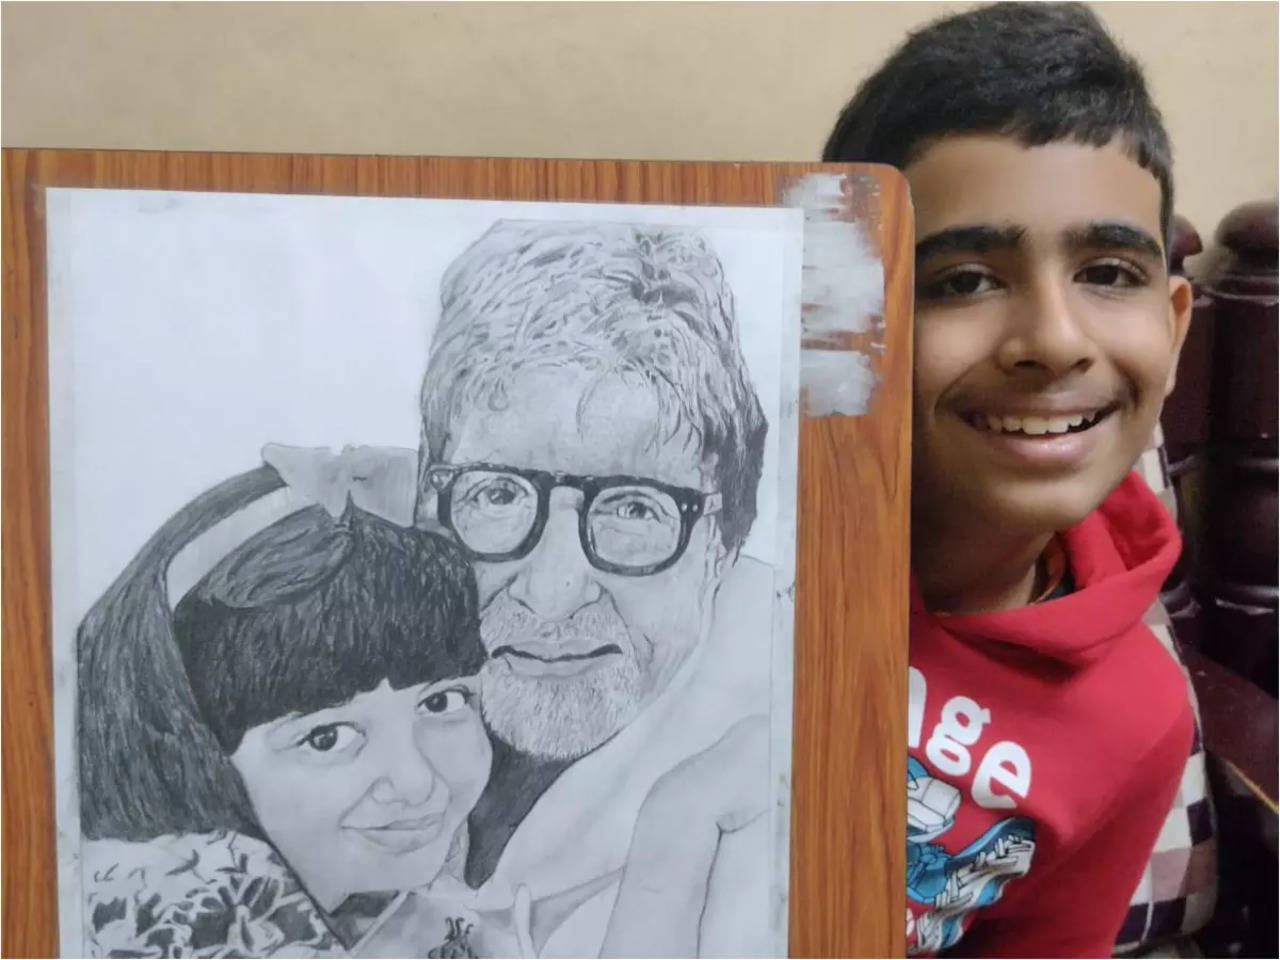 Amitabh Bachchan, Drawing/illustration for sale by Shivkumar - Foundmyself